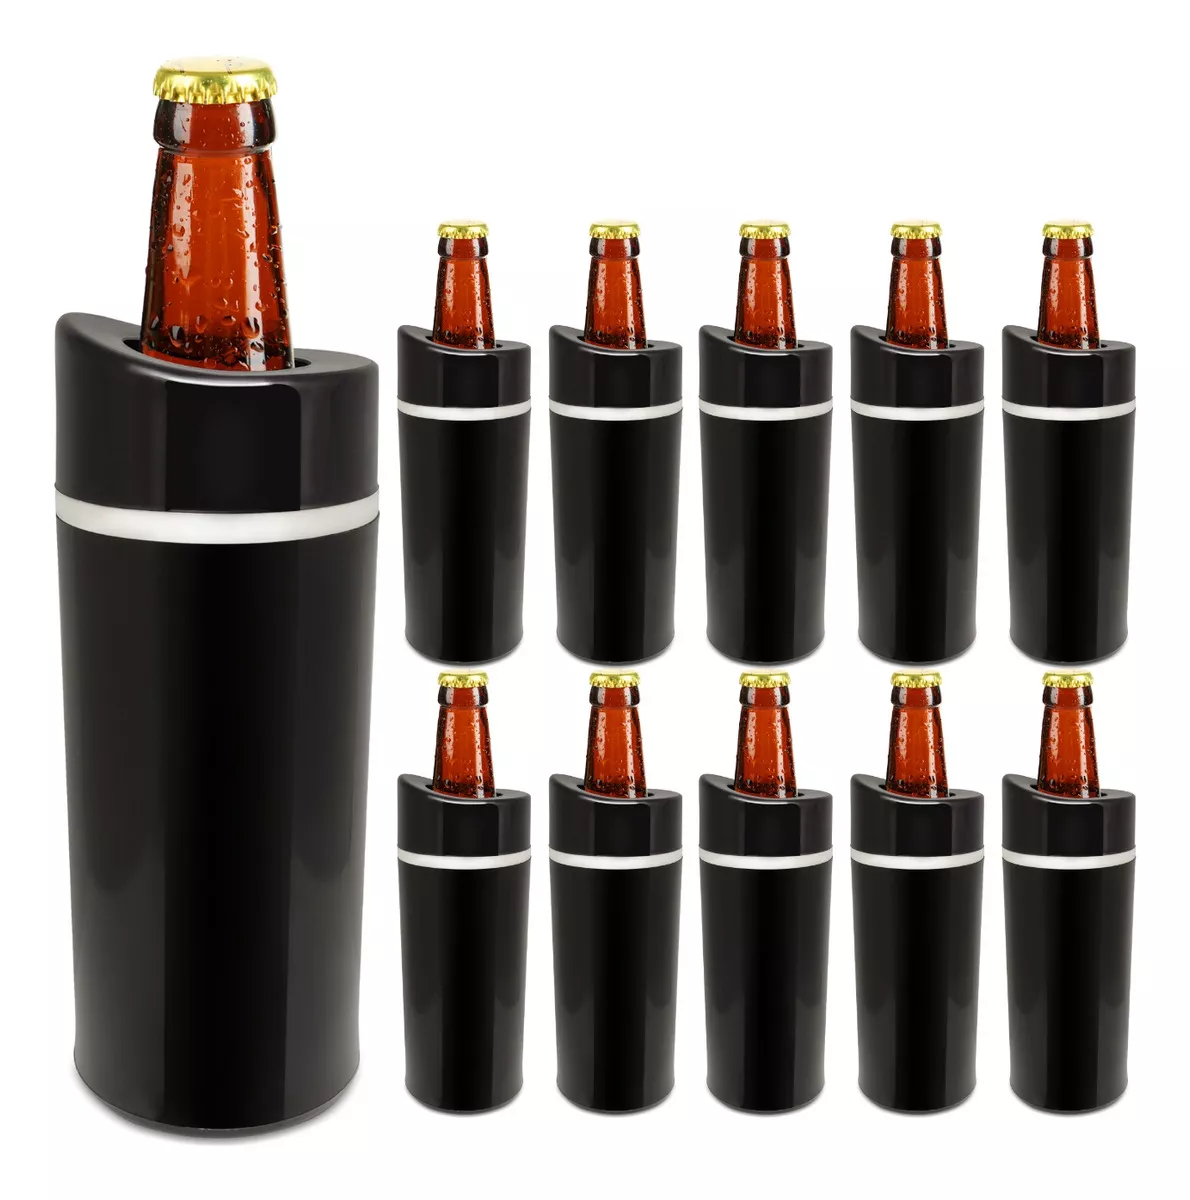 Terceira imagem para pesquisa de porta garrafa cerveja personalizada